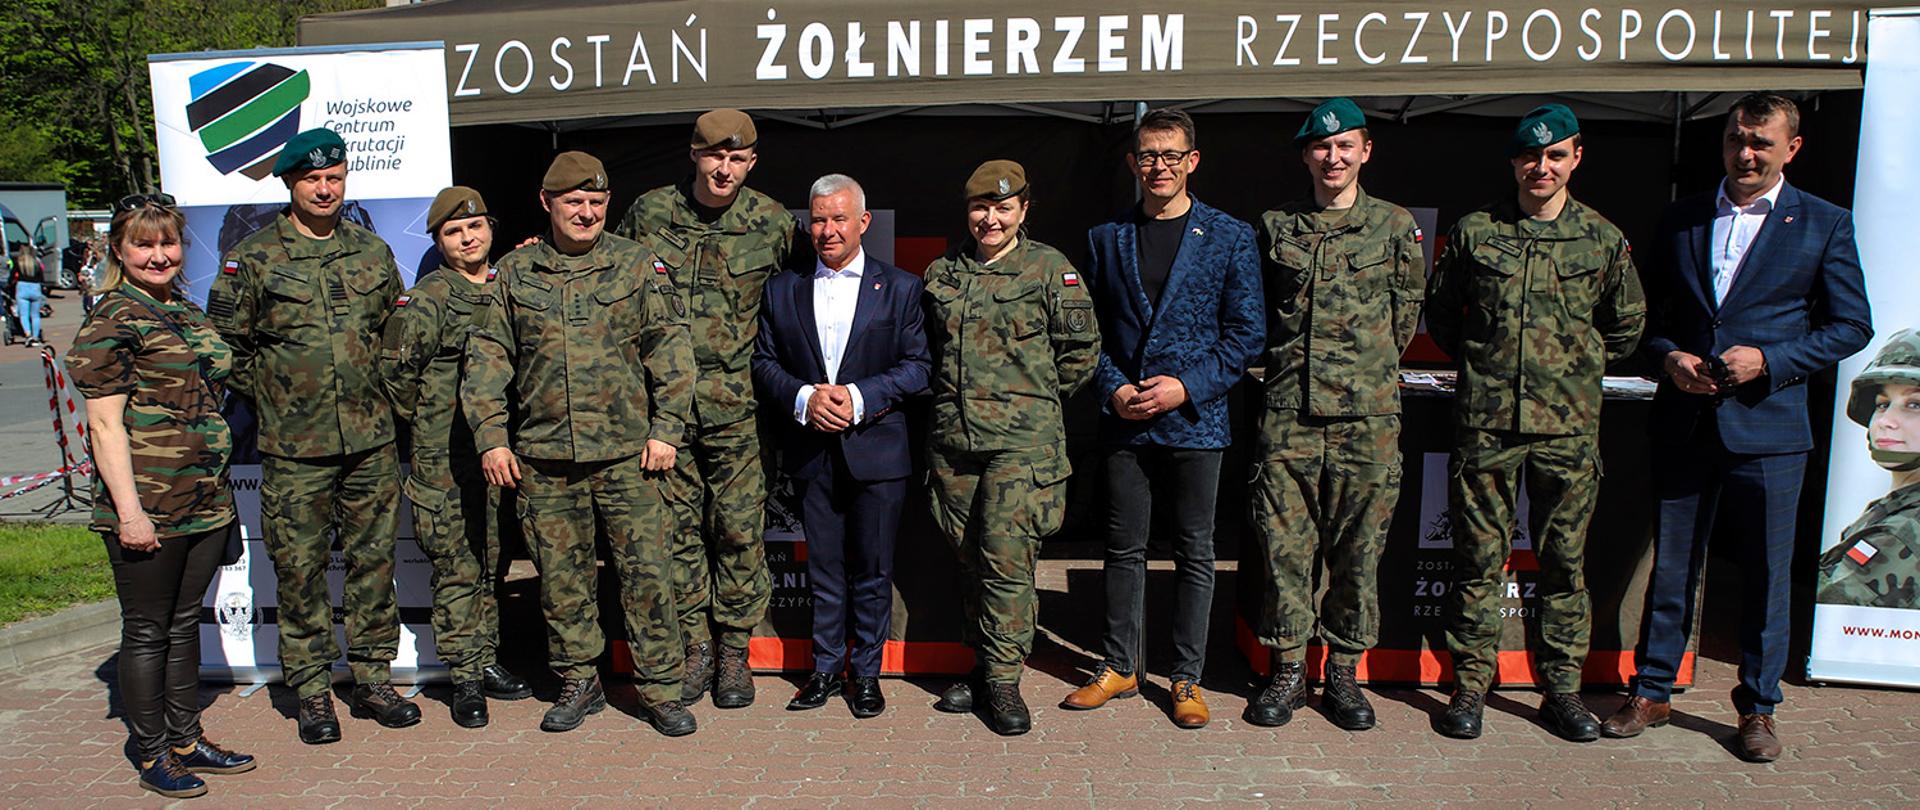 Zdjęcie przedstawia wojskowych w mundurach oraz przedstawicieli Powiatu Kraśnickiego stojących w rzędzie. Za nimi znajduje się namiot, na którym znajduje się napis "Zostań żołnierzem Rzeczypospolitej".